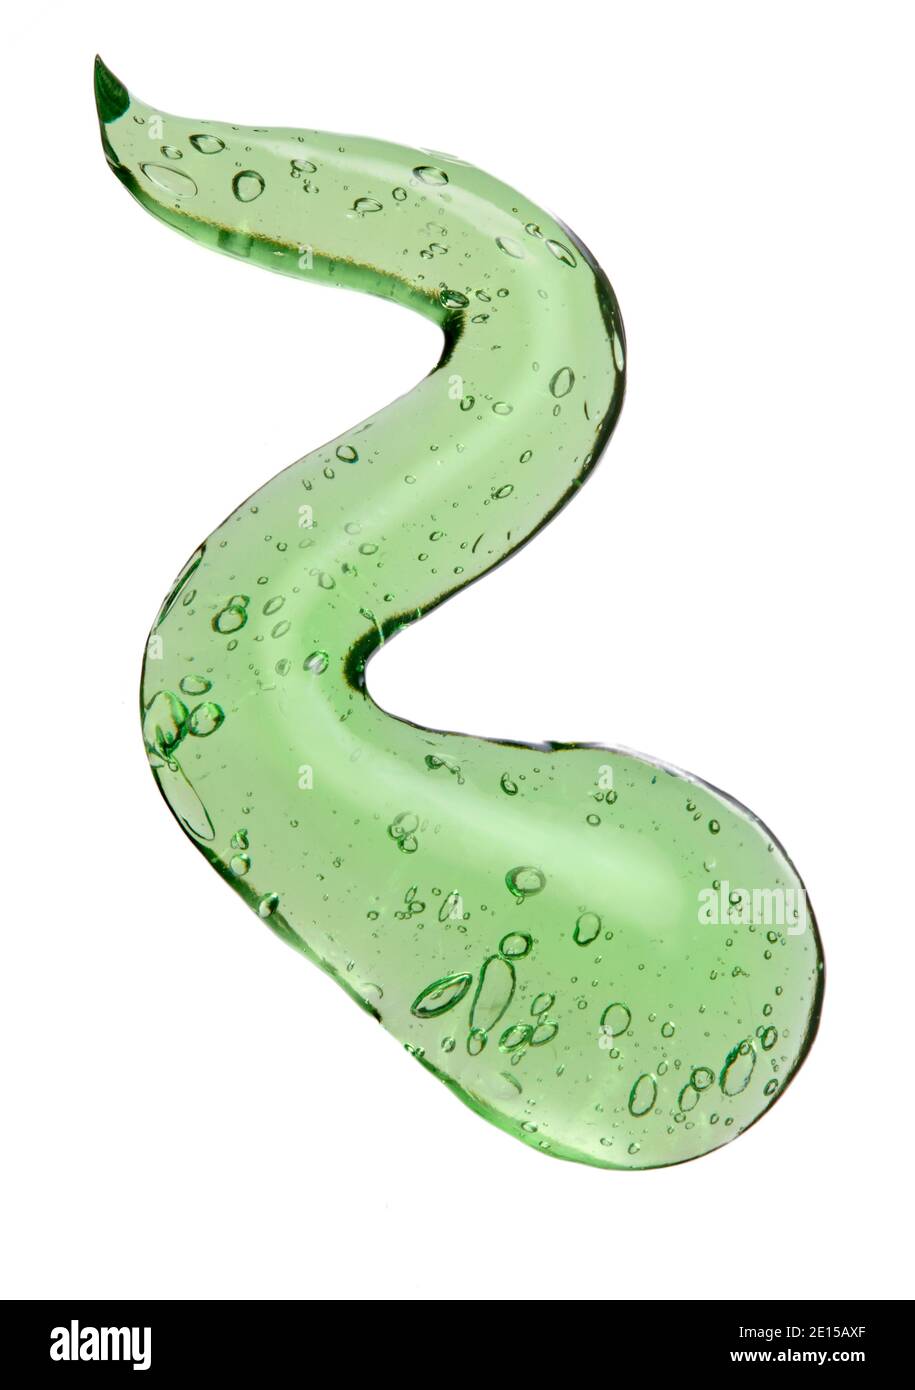 Green Aloe gel squiggle fotografato su uno sfondo bianco Foto Stock